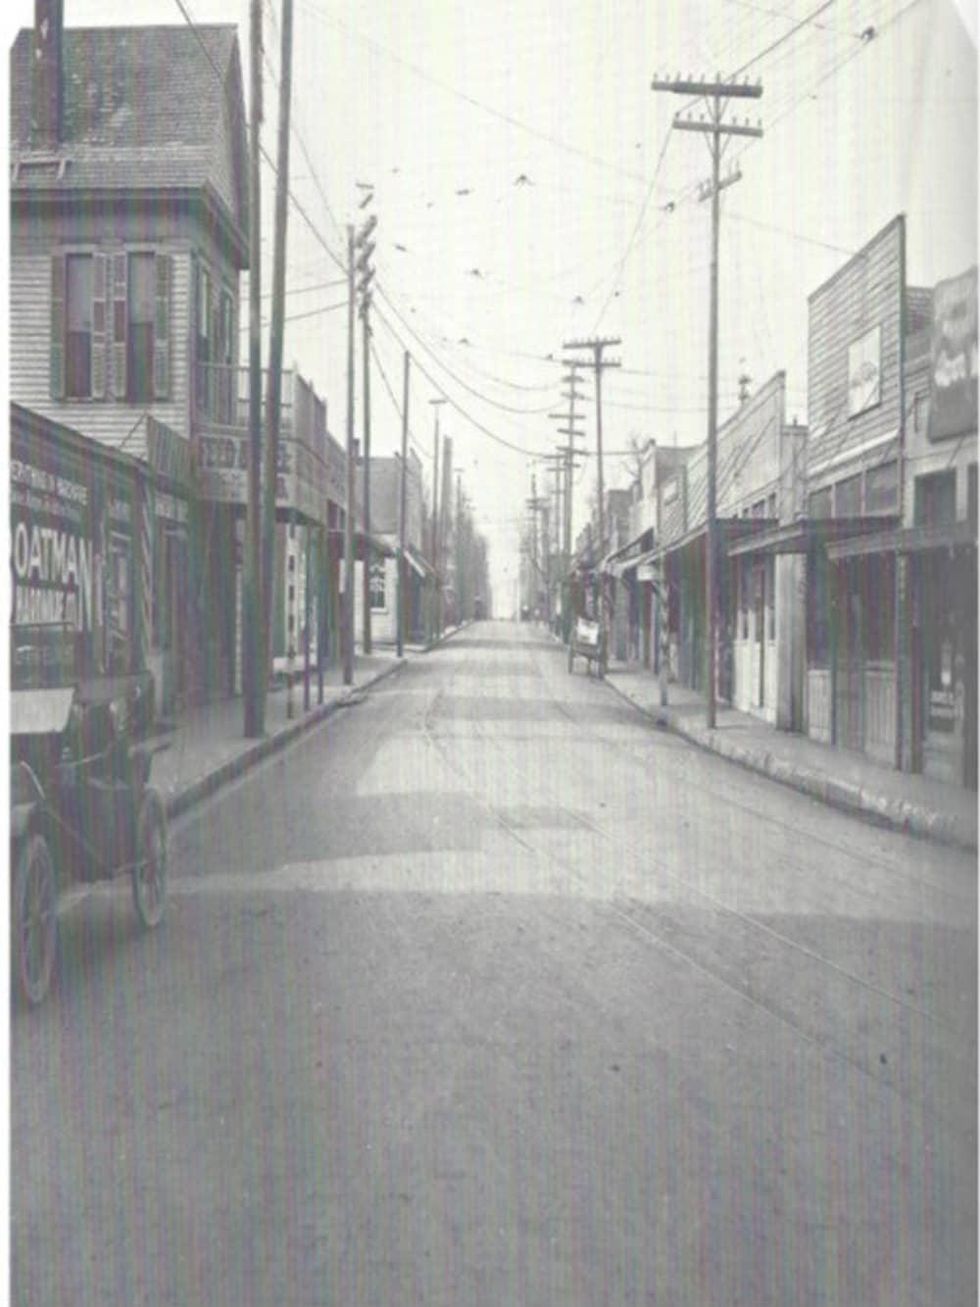 McKinney Avenue in Dallas in 1910